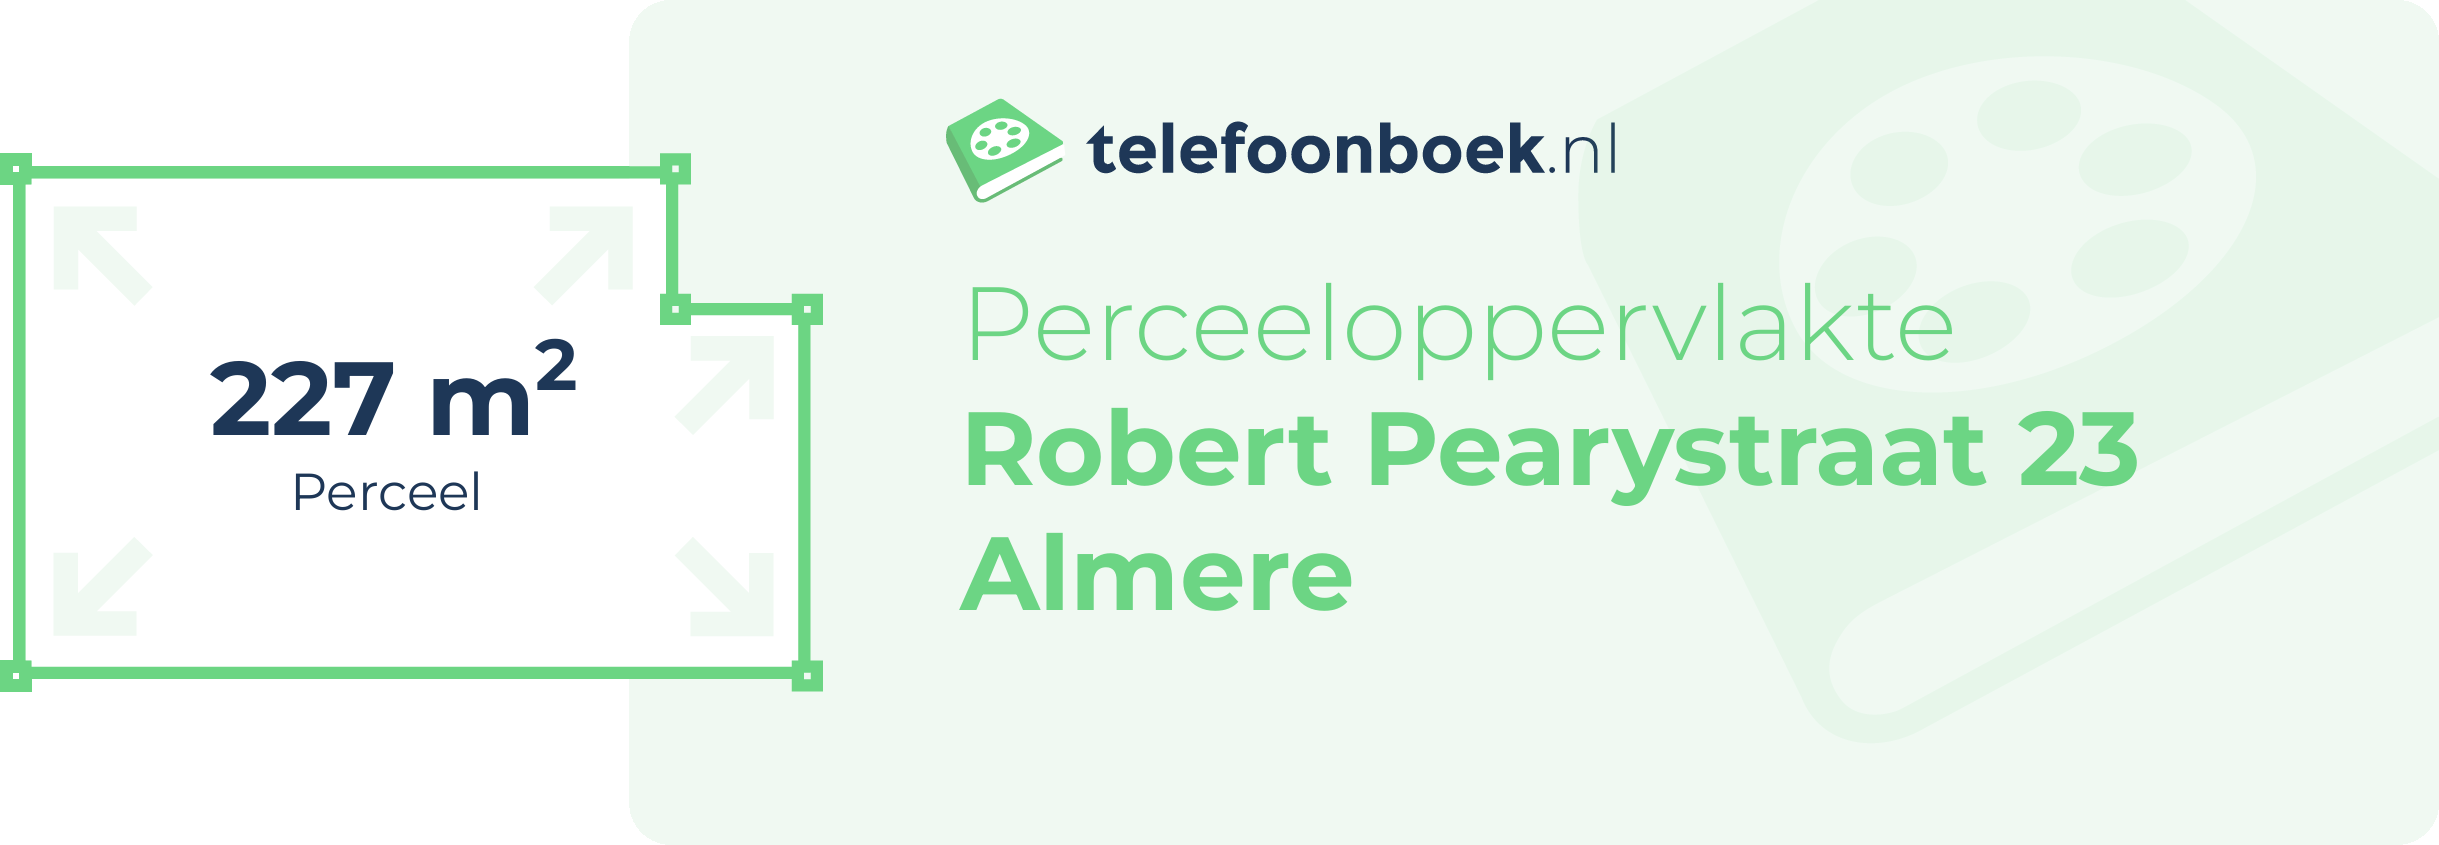 Perceeloppervlakte Robert Pearystraat 23 Almere